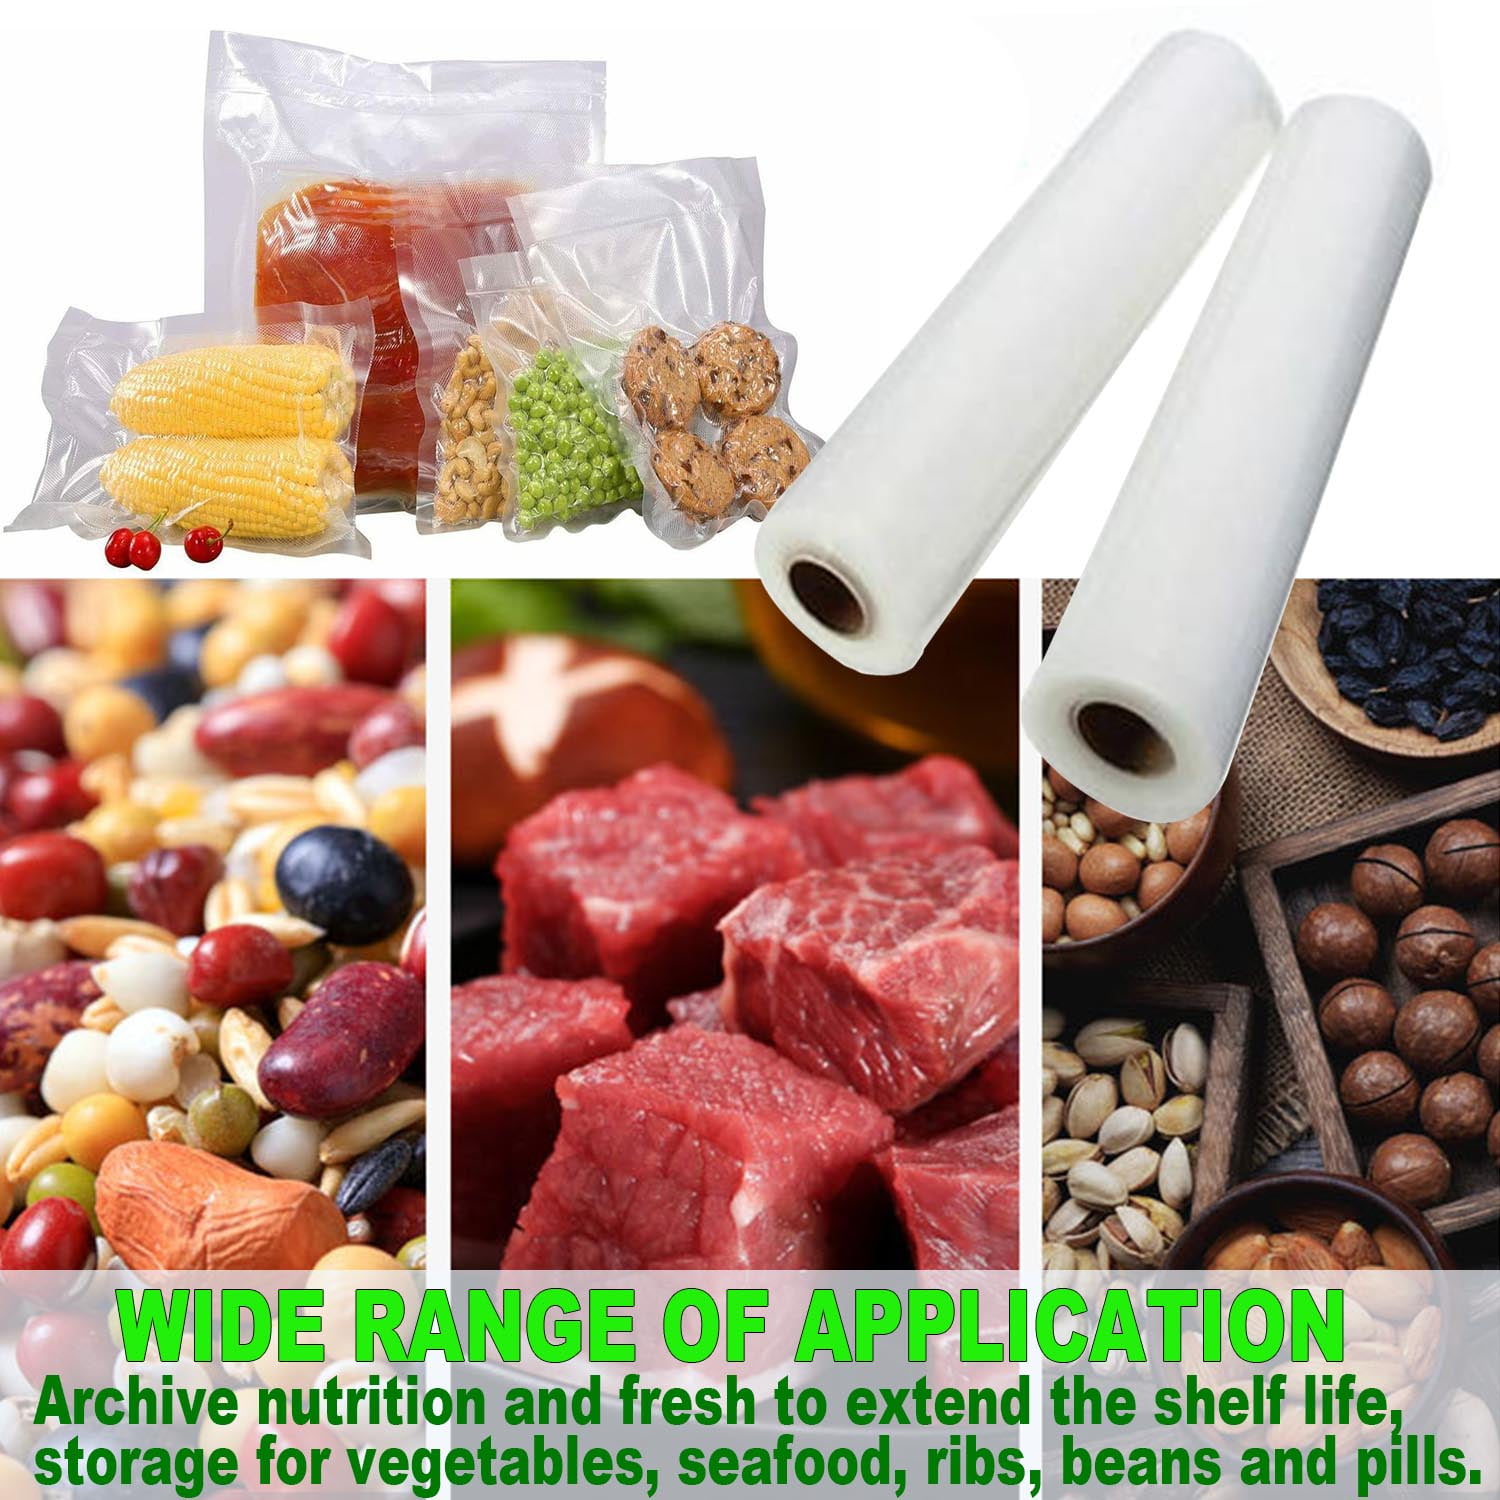 KIHOUT Clearance 10 Reusable Vacuum Seal Bags, Reusable Vacuum Food Storage  Bags, Food Storage Bags For Vacuum Sealer, BPA Free 